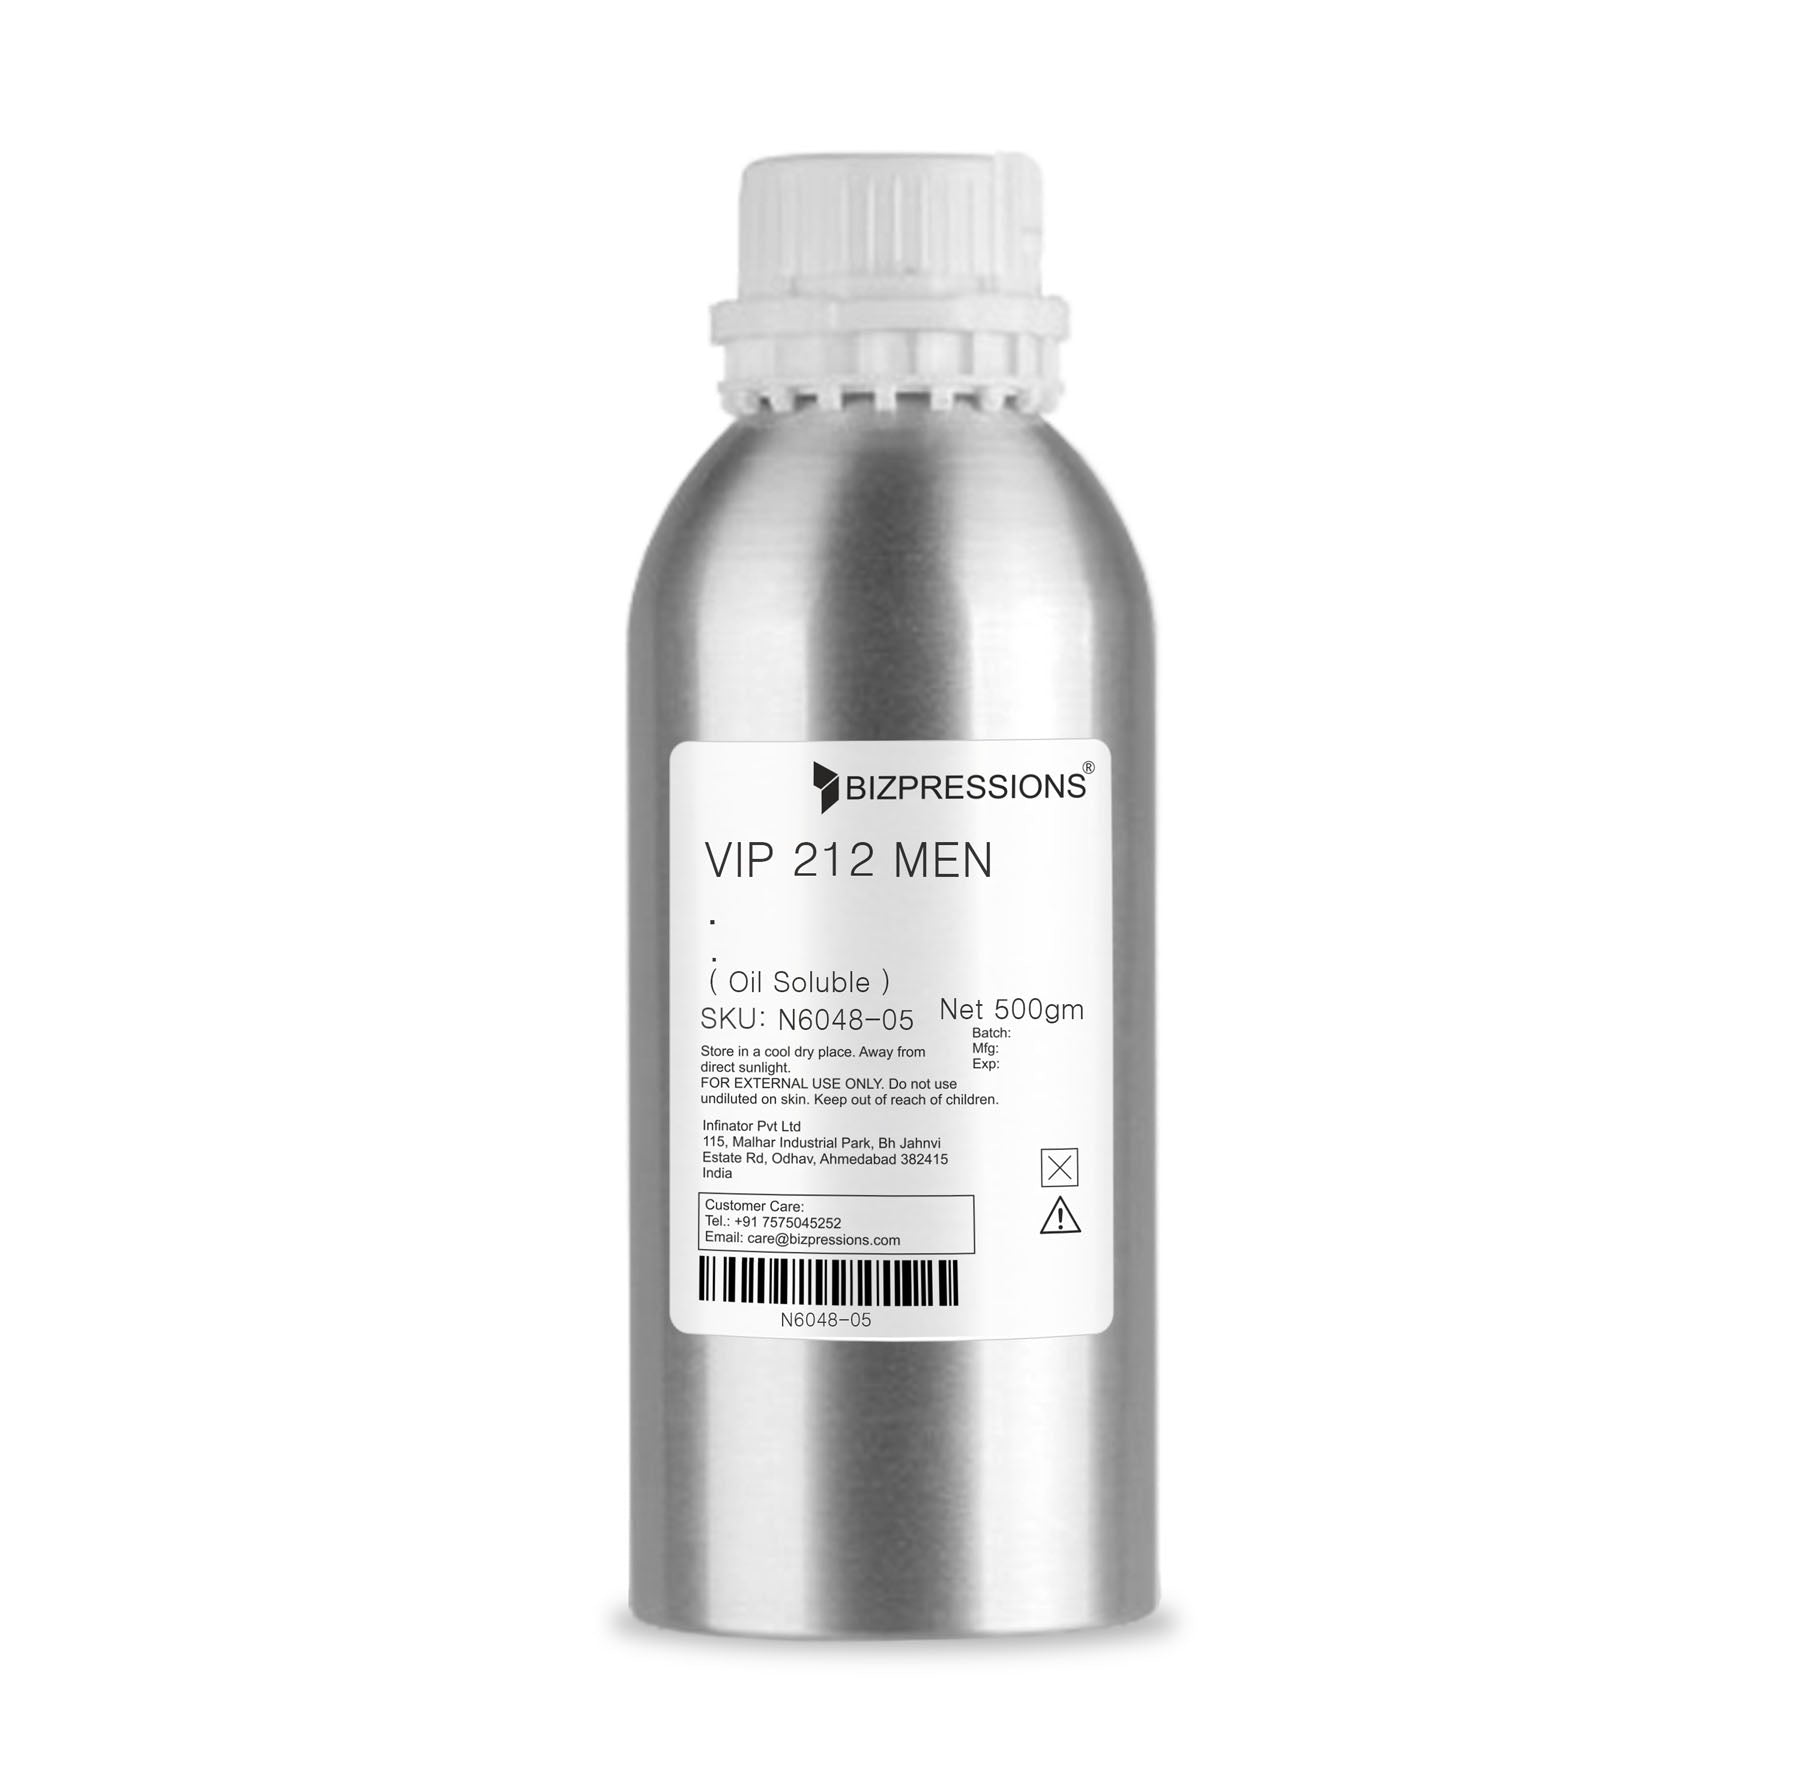 VIP 212 MEN - Fragrance ( Oil Soluble ) - 500 gm